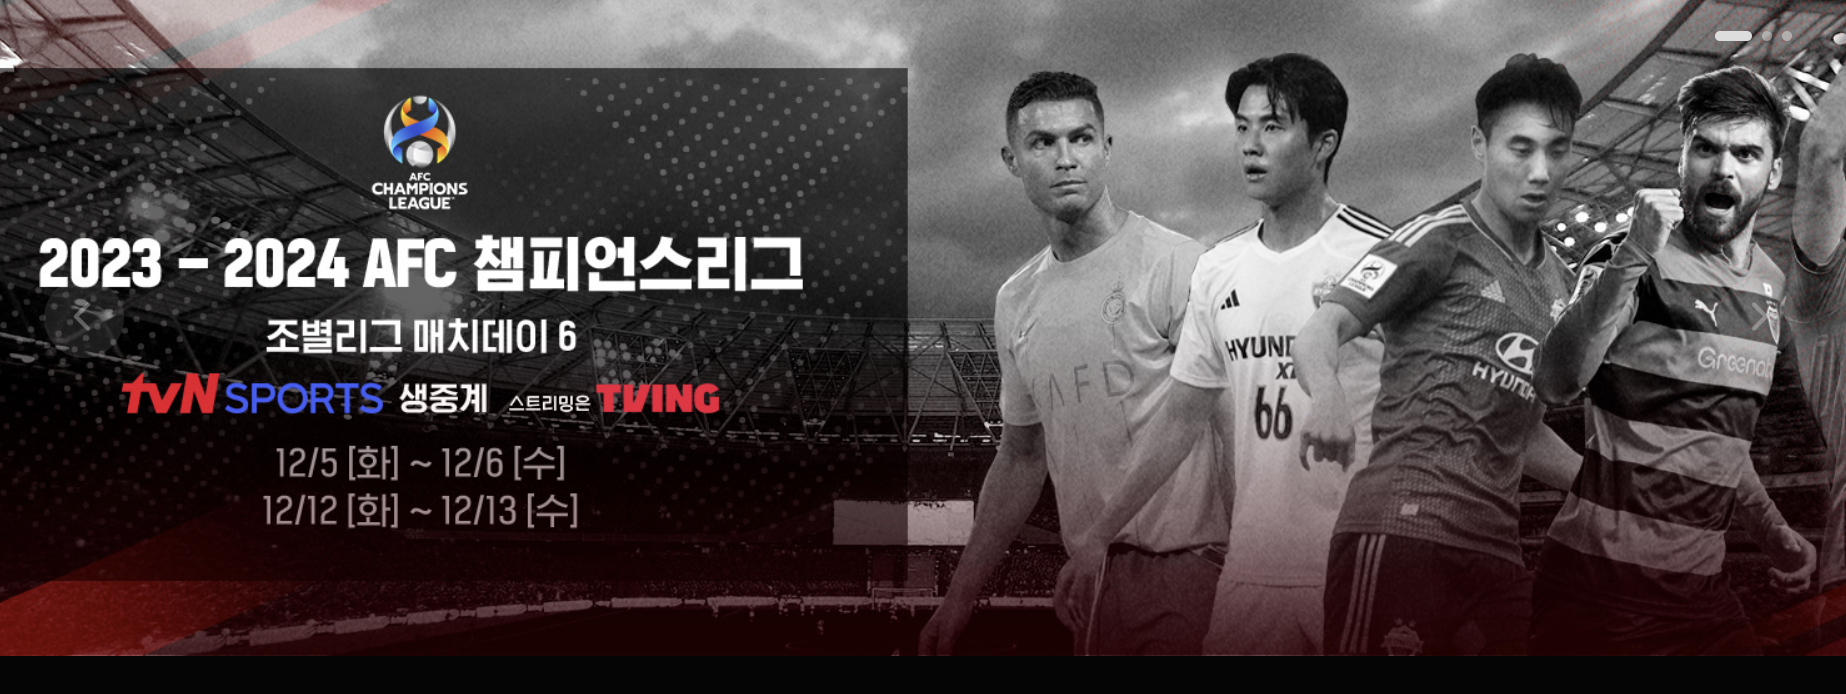 티빙-tvN스포츠-실시간중계